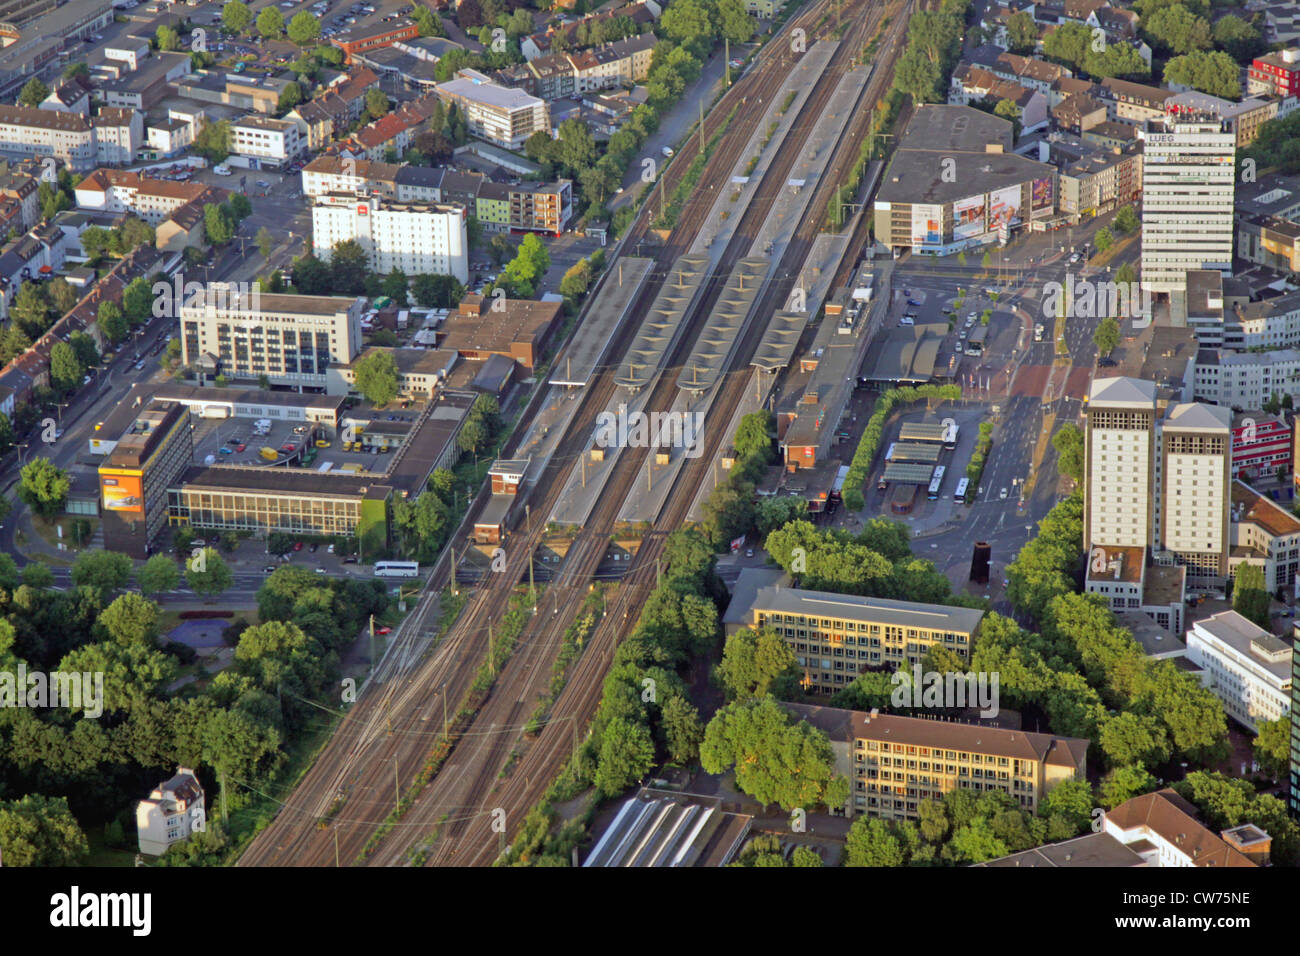 Vista della stazione principale, hotel Holday Inn e Ibis, il principale ufficio postale e opera d'arte "terminale", in Germania, in Renania settentrionale-Vestfalia, la zona della Ruhr, Bochum Foto Stock